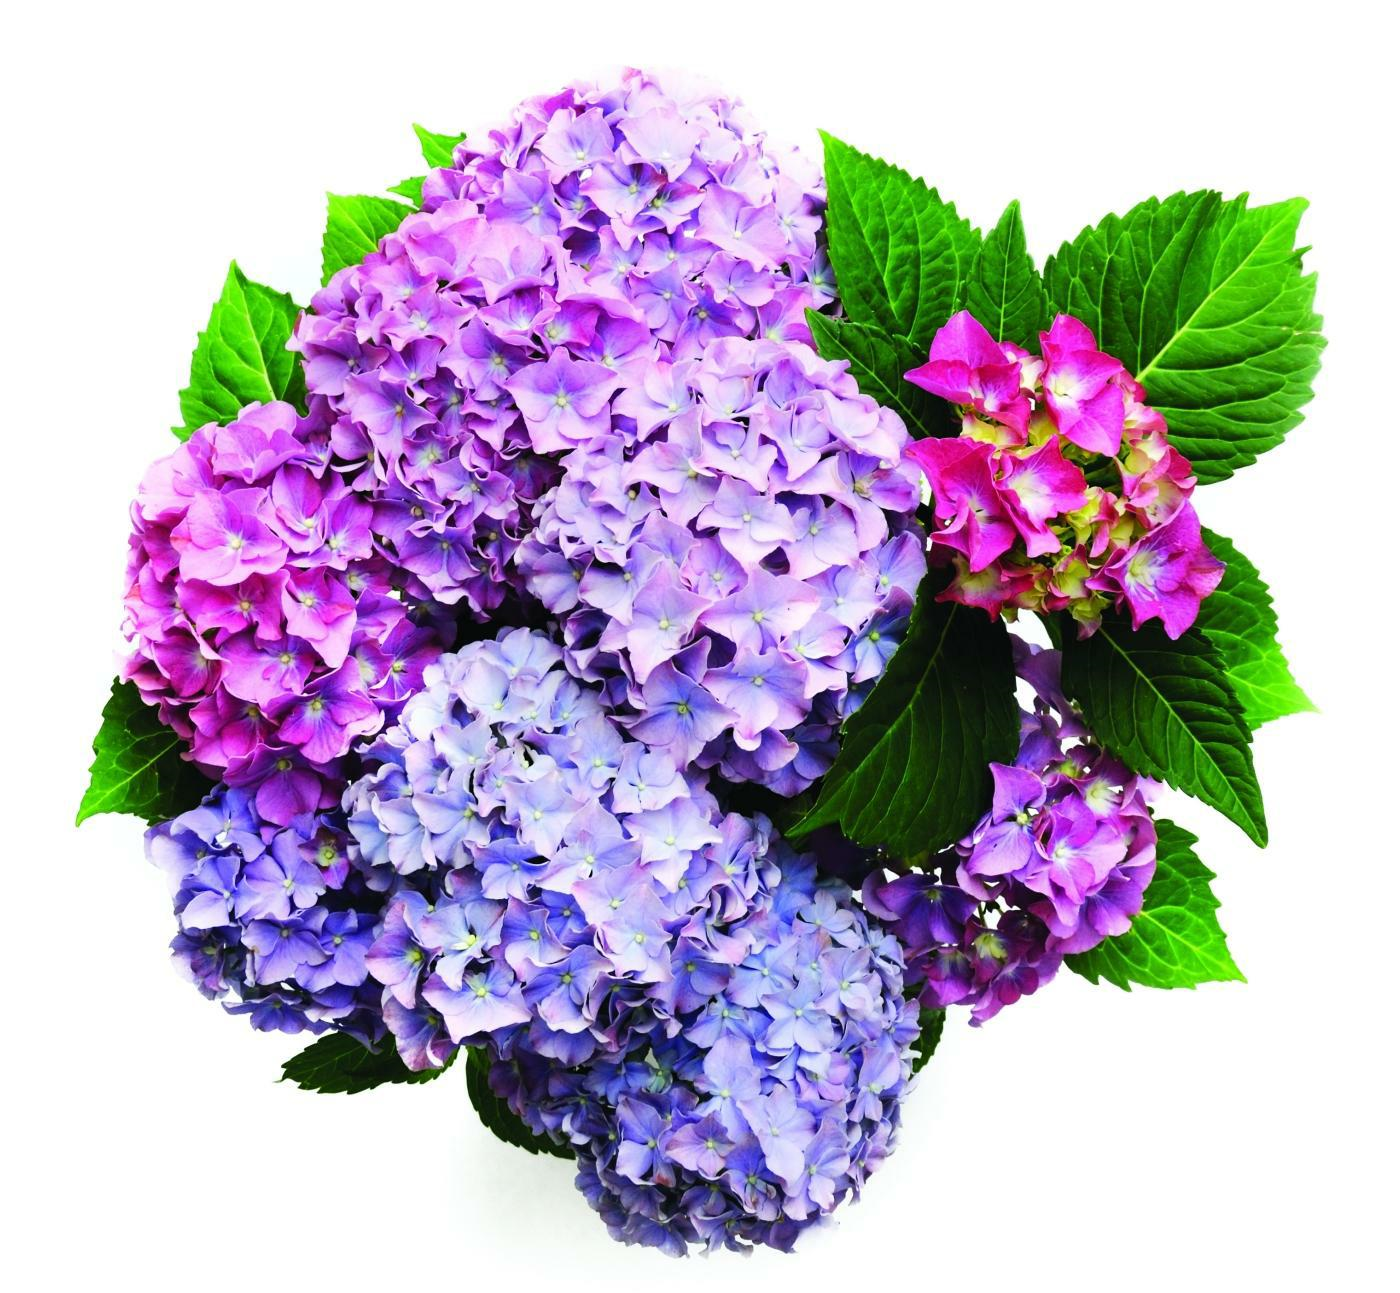 An arrangement of purple hydrangeas.